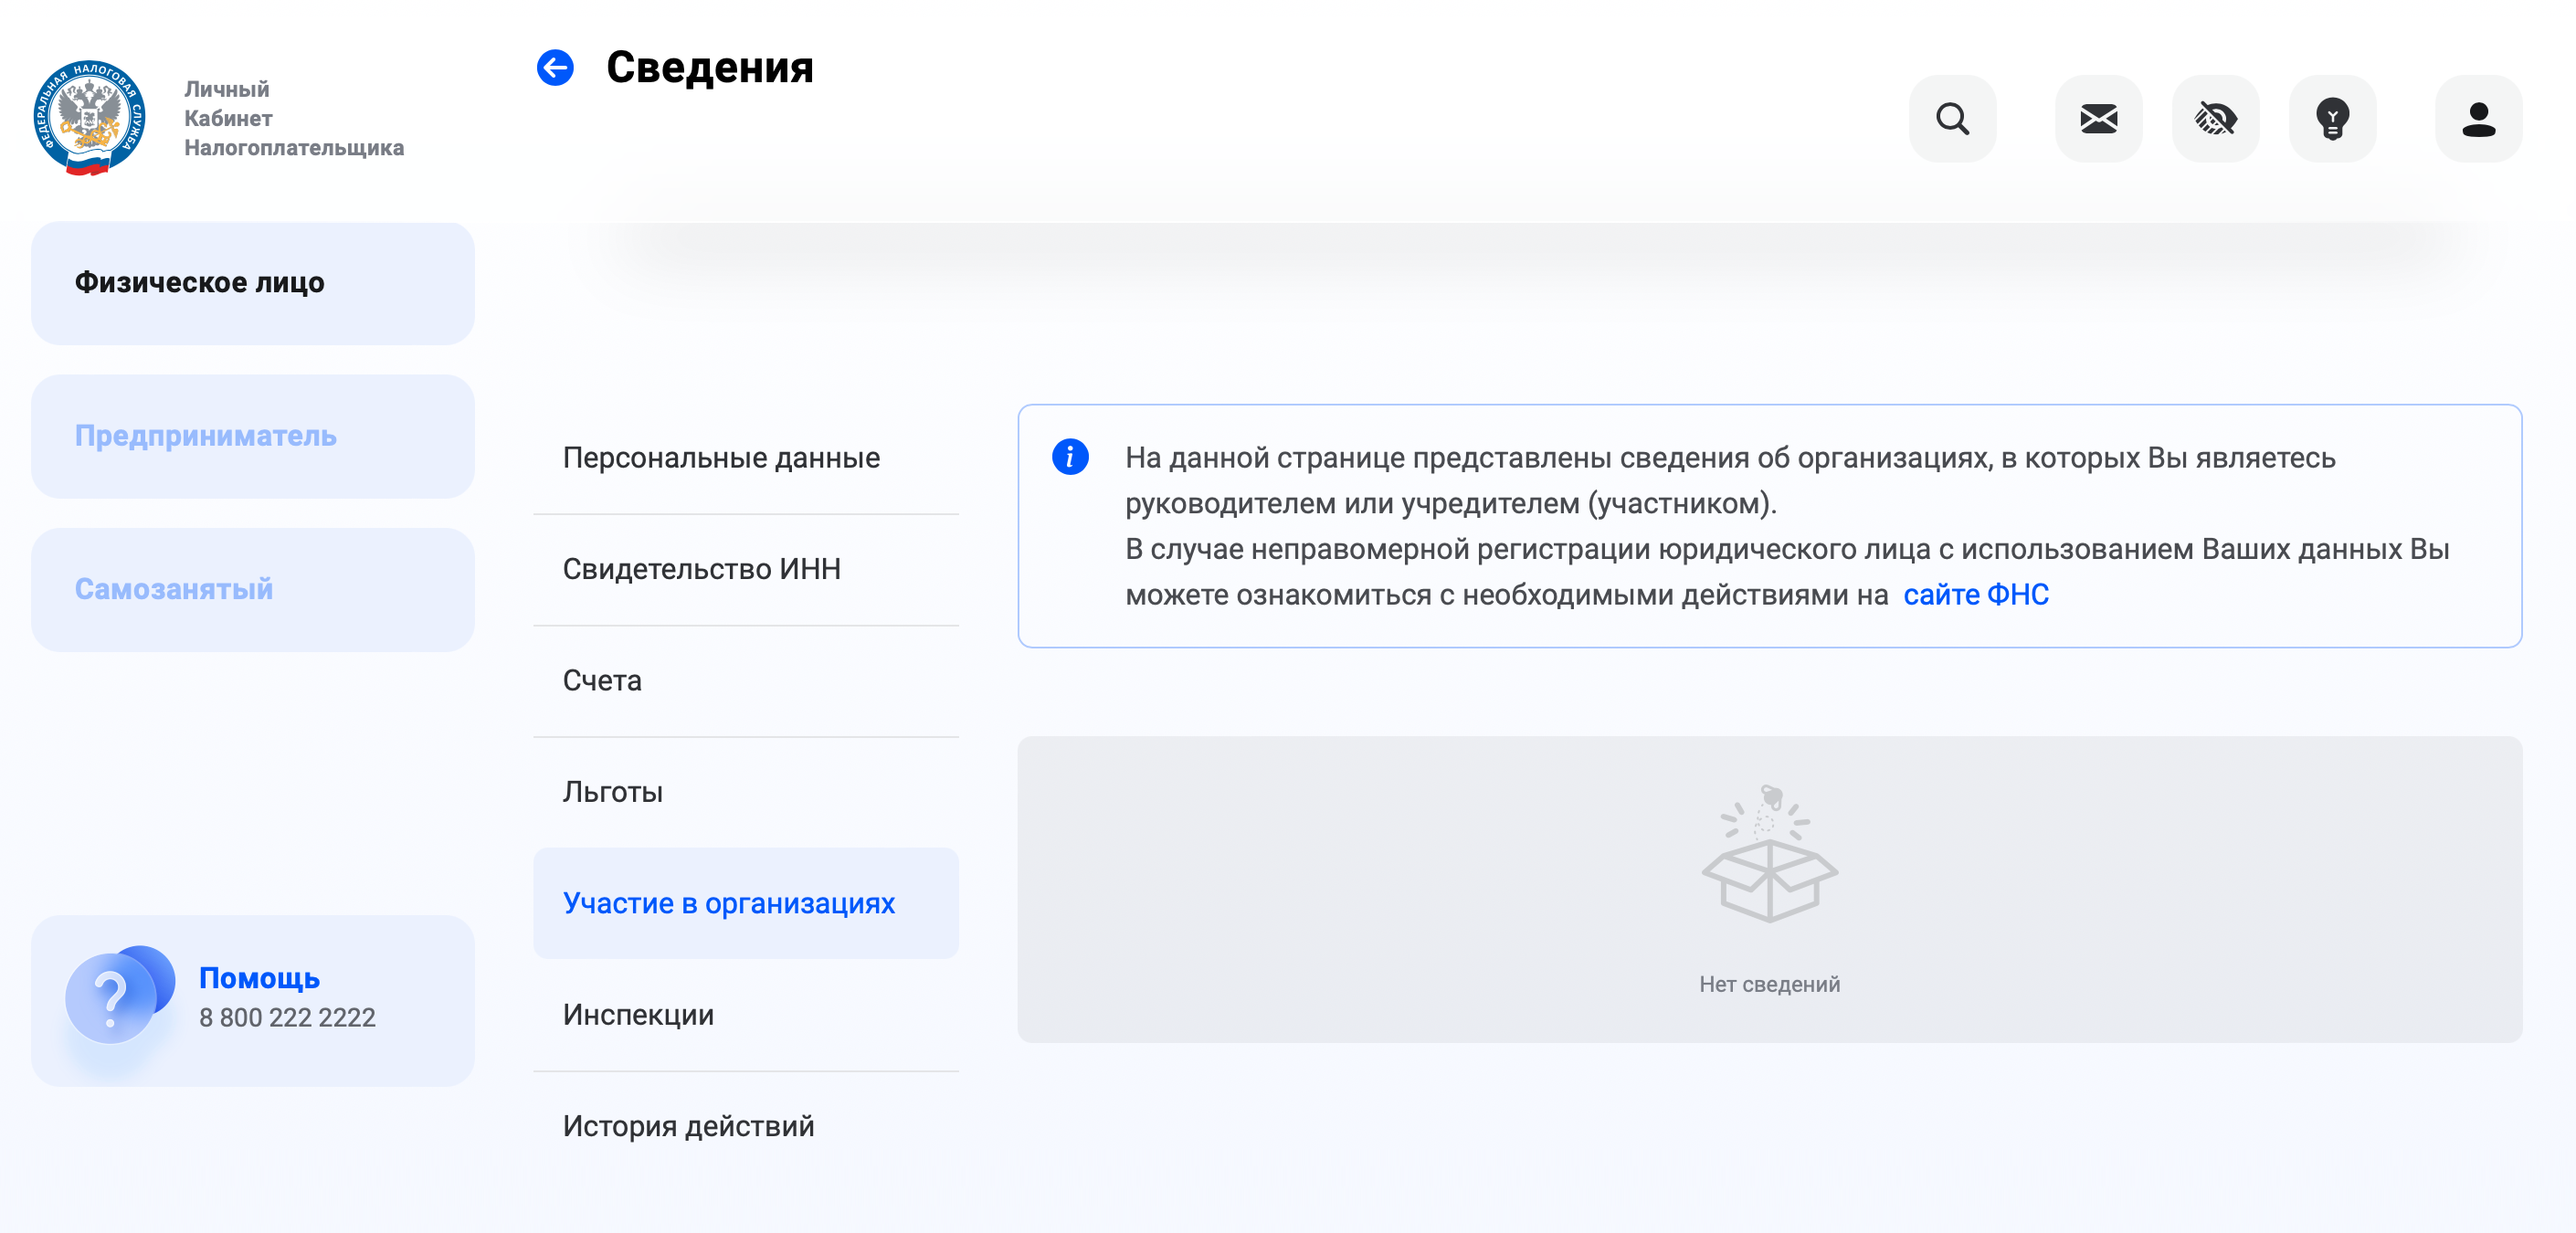 Если пользователь числится участником какой-либо организации, сведения о ней появятся в этом разделе. Источник: lkfl2.nalog.ru